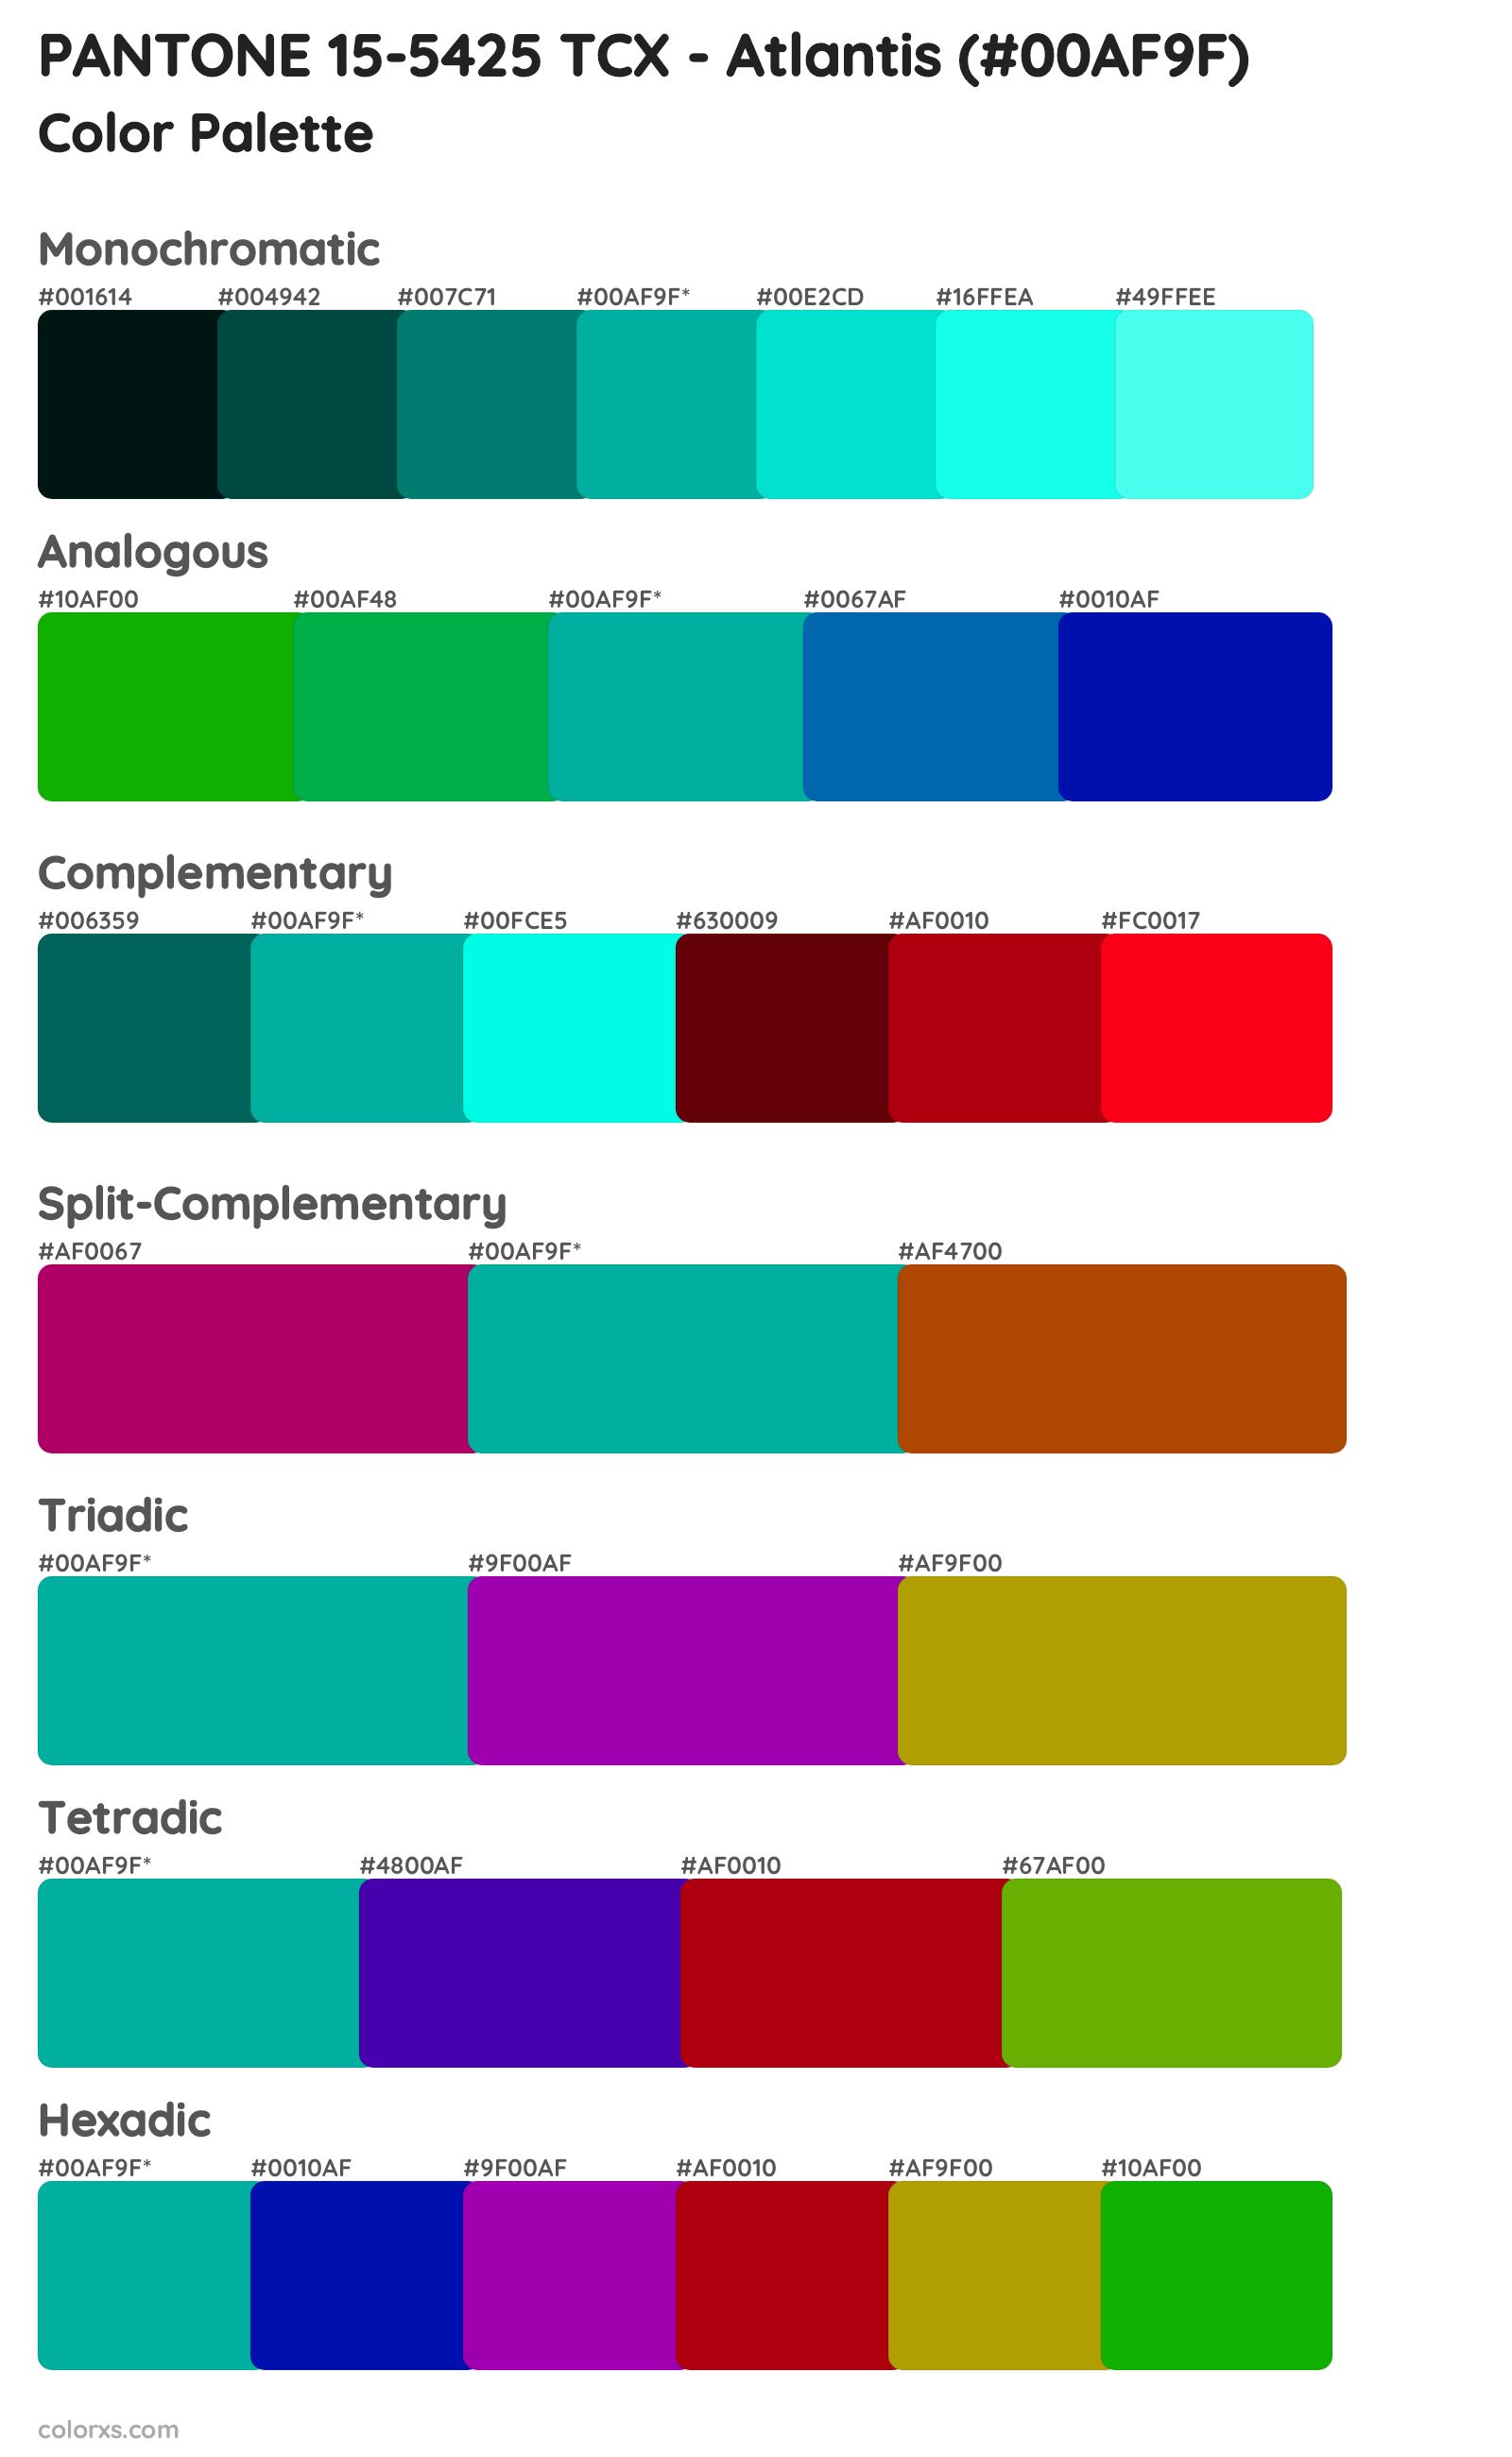 PANTONE 15-5425 TCX - Atlantis Color Scheme Palettes